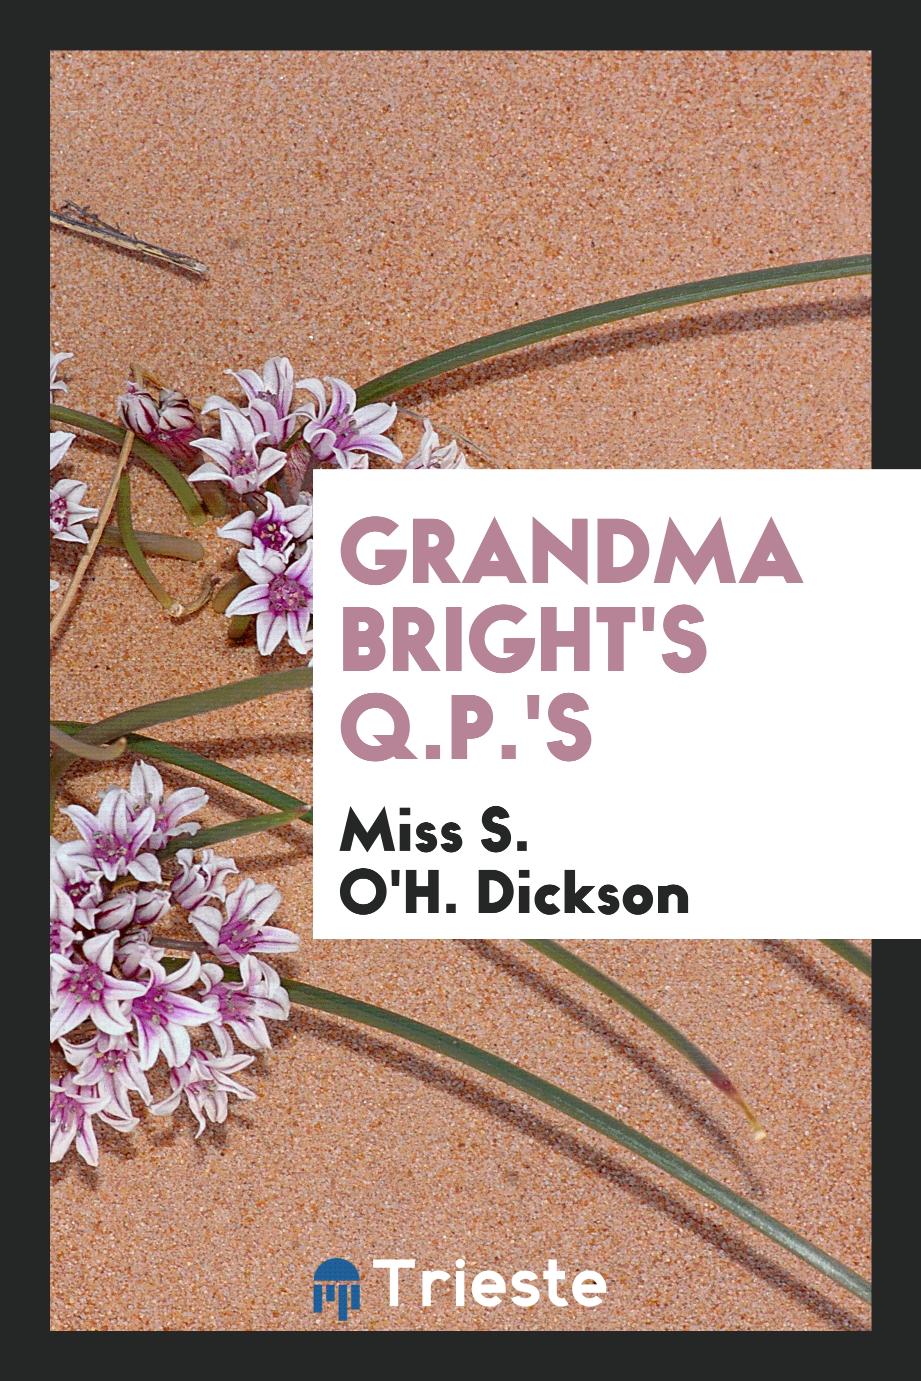 Grandma Bright's Q.P.'s